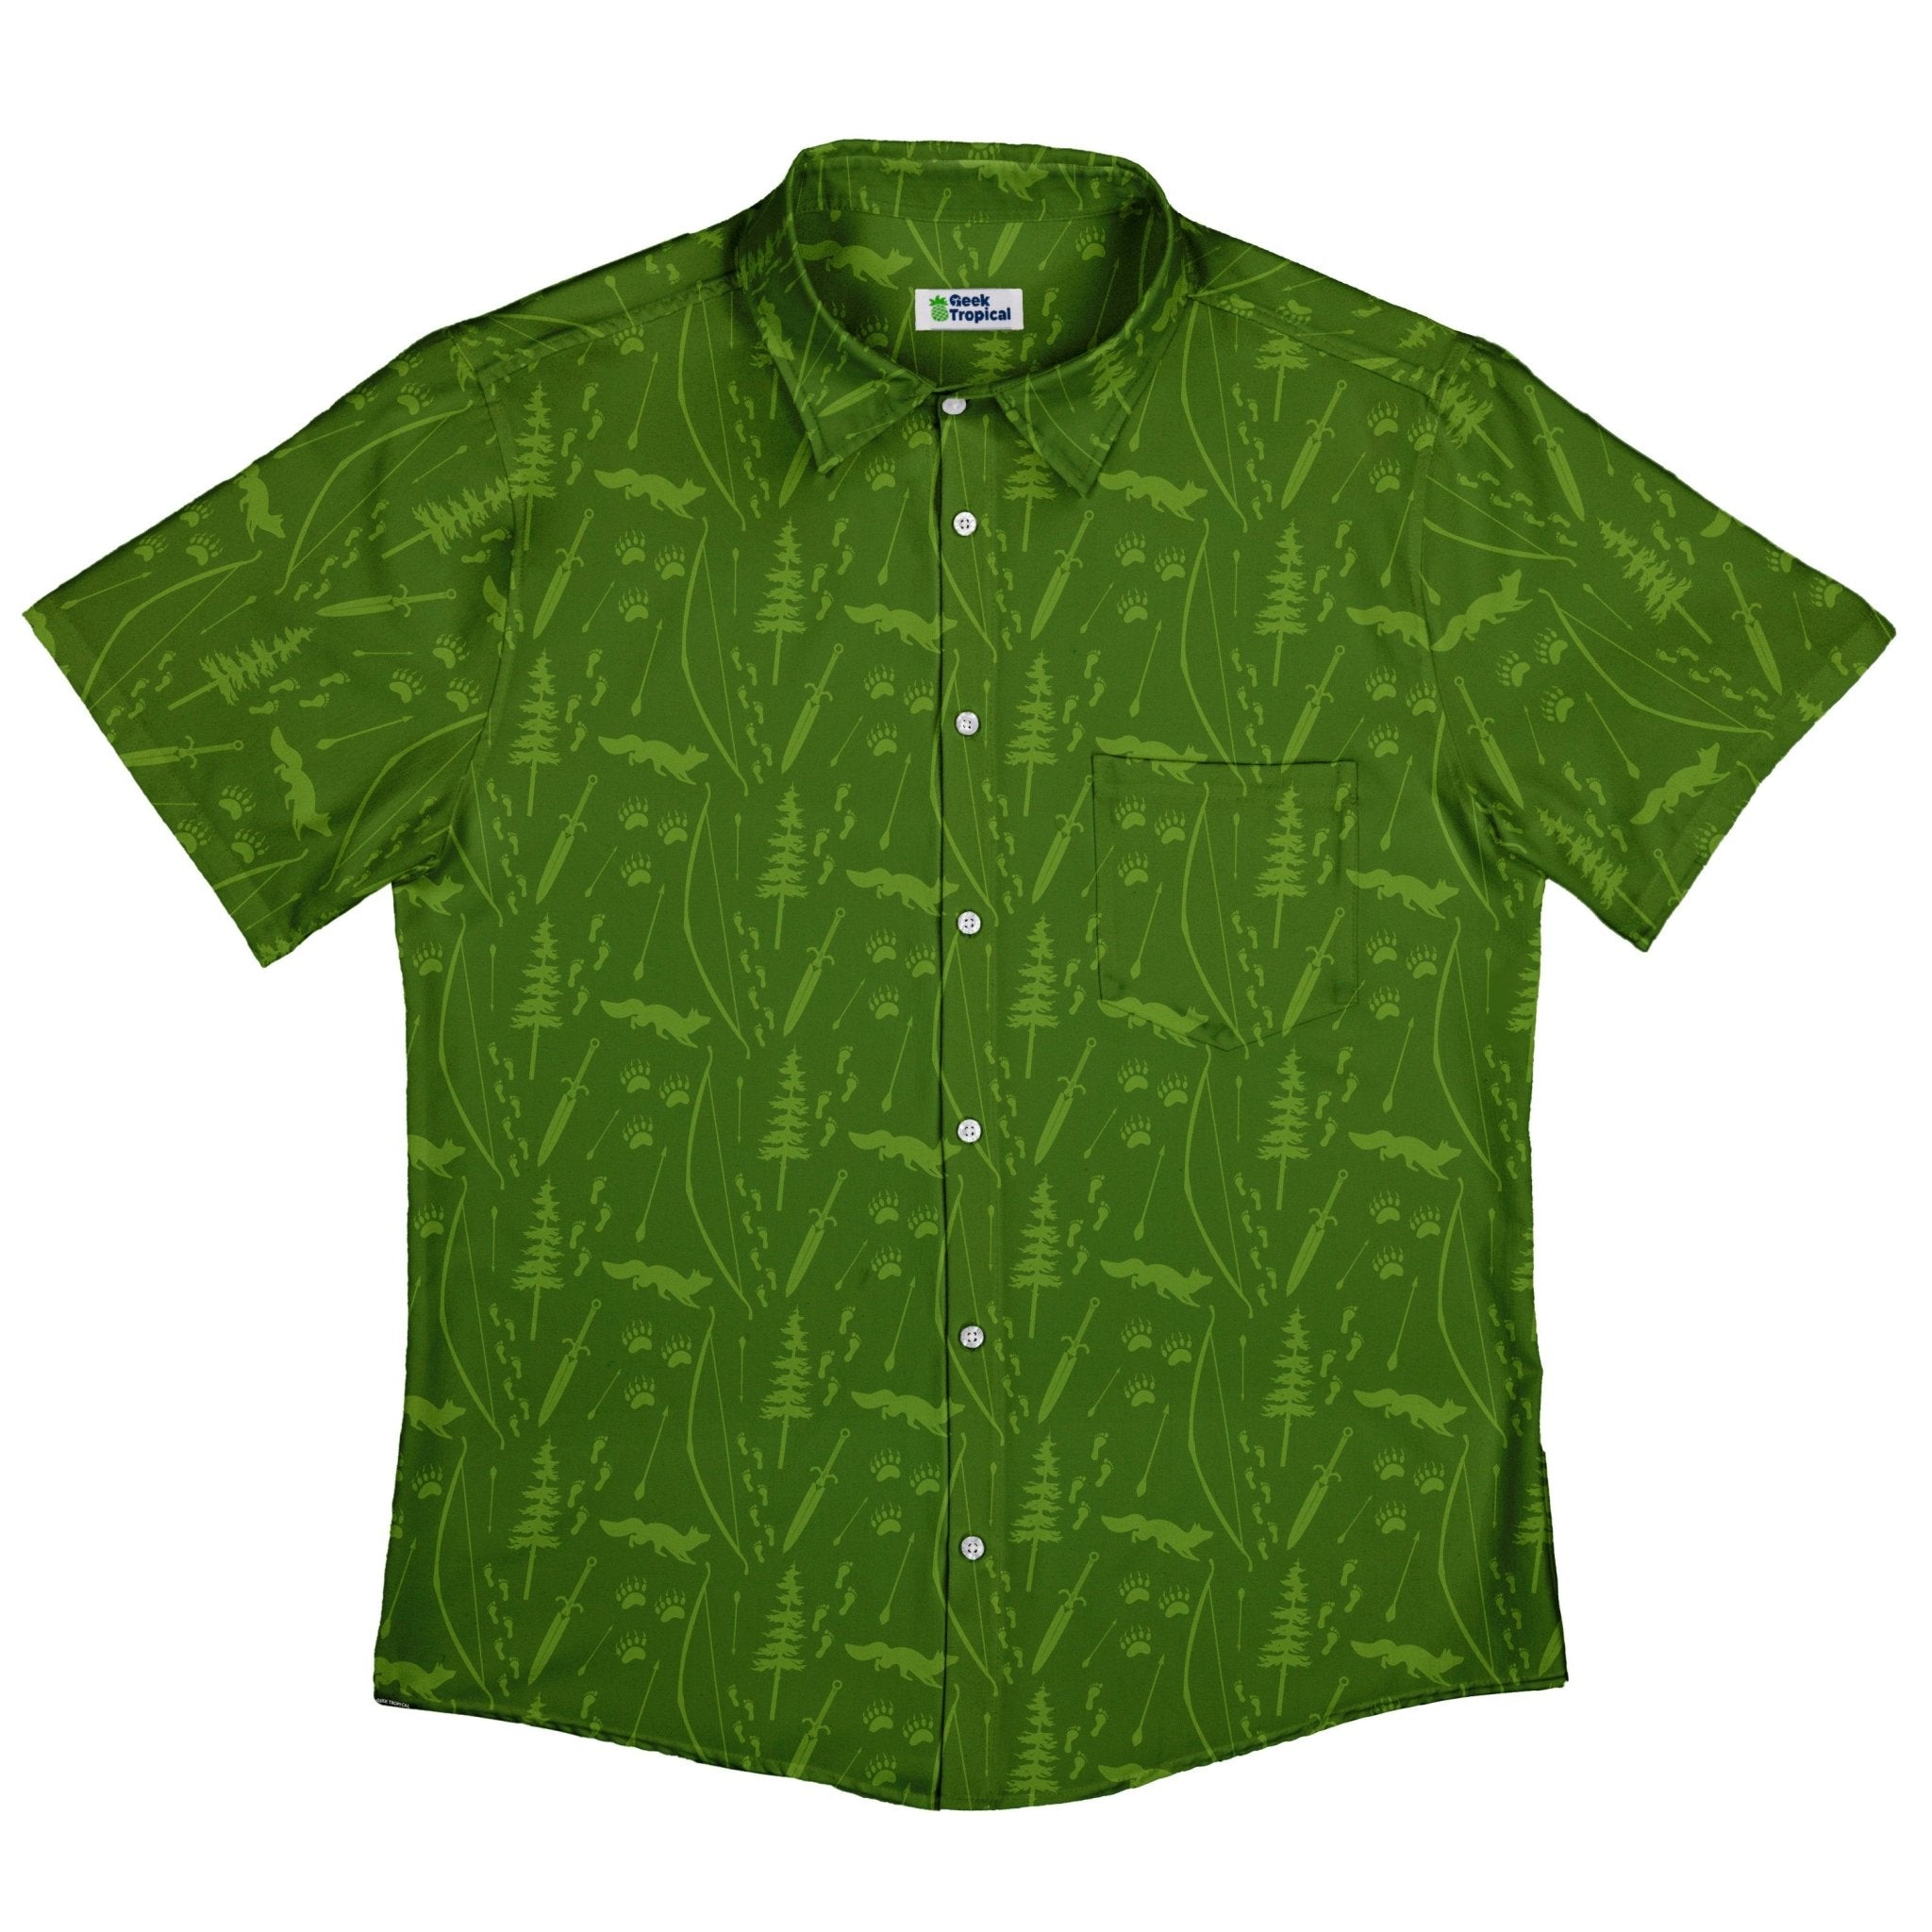 Dnd Ranger Class Button Up Shirt - adult sizing - Design by Heather Davenport - dnd & rpg print